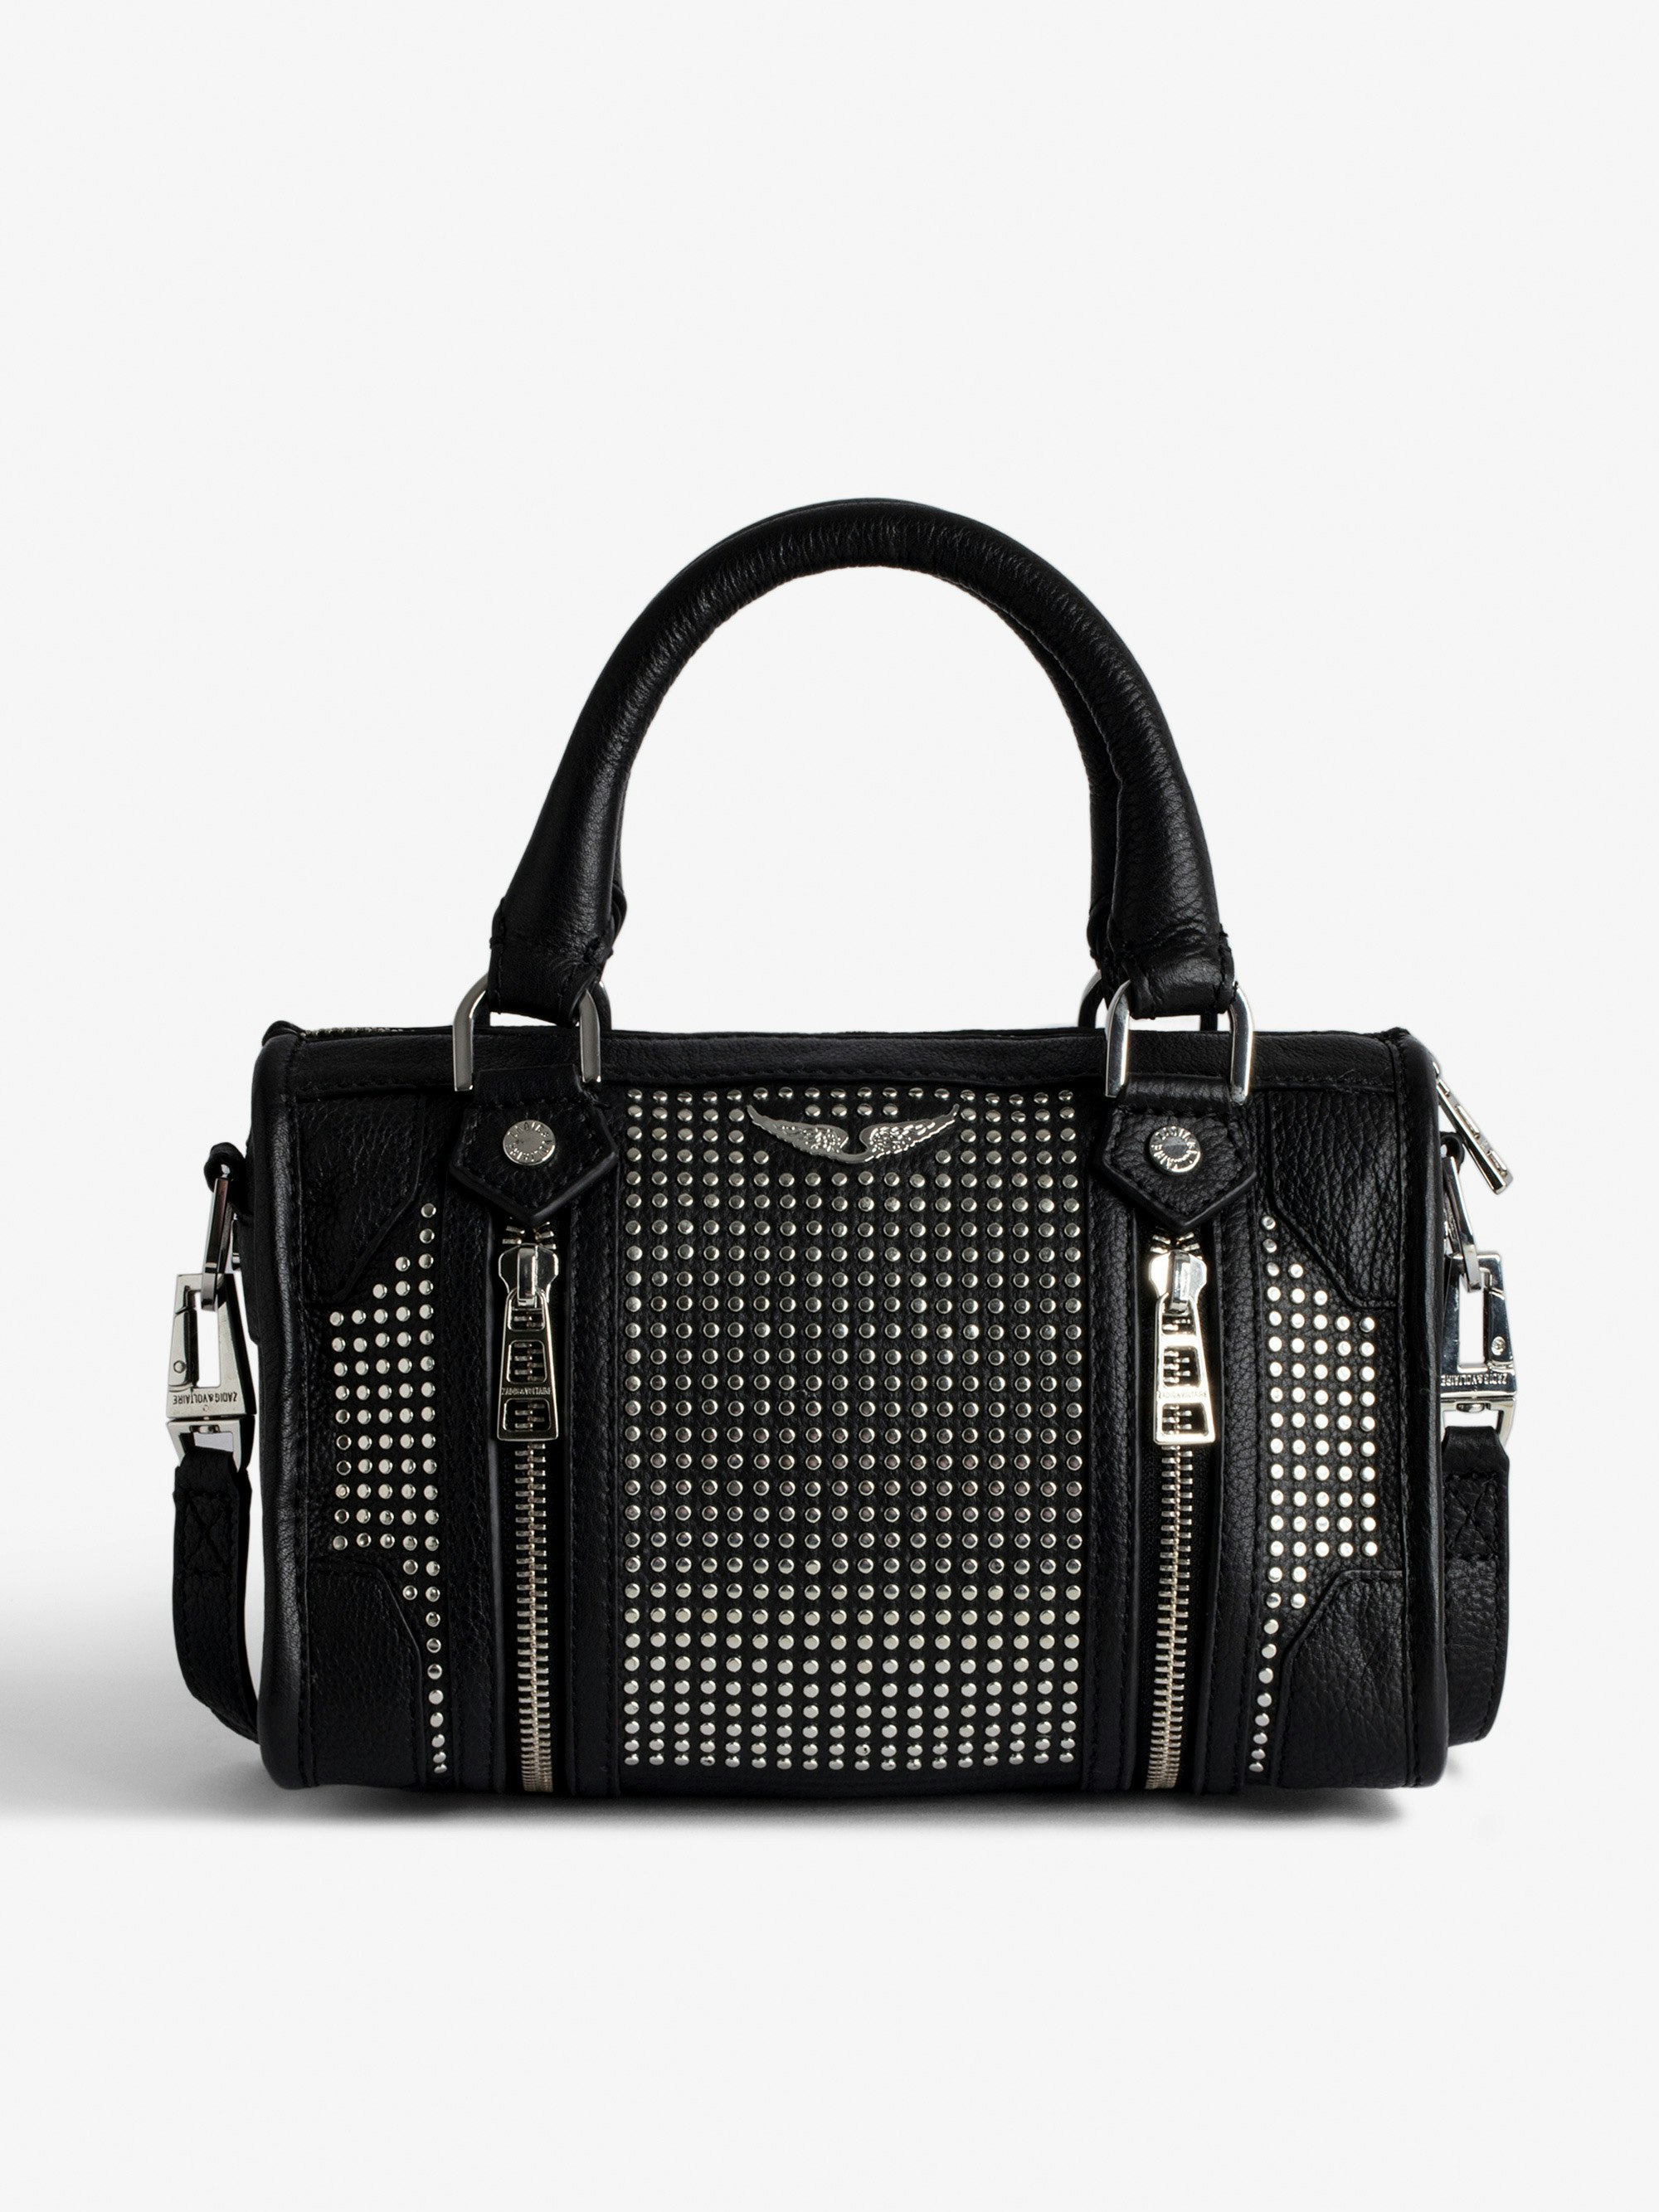 Bolso XS Sunny #2 - Pequeño bolso con cremallera en piel negra con tachuelas, con bandolera, para mujer.